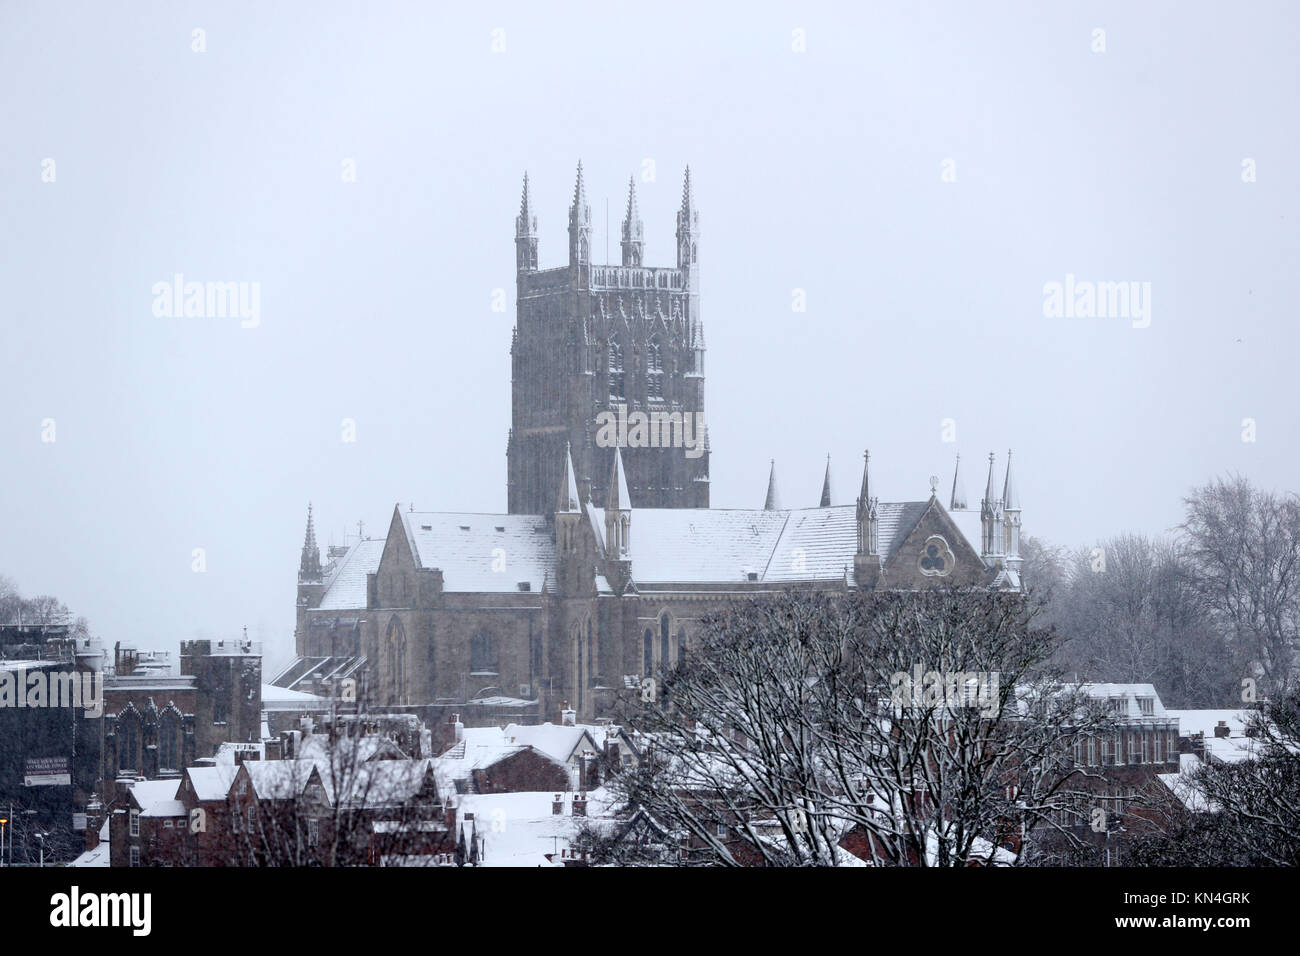 Die Kathedrale von Worcester im Schnee bedeckt, starker Schneefall über Teile von Großbritannien weitverbreitete Störungen verursacht, schließen Straßen und Erdung Flüge am Flughafen. Stockfoto